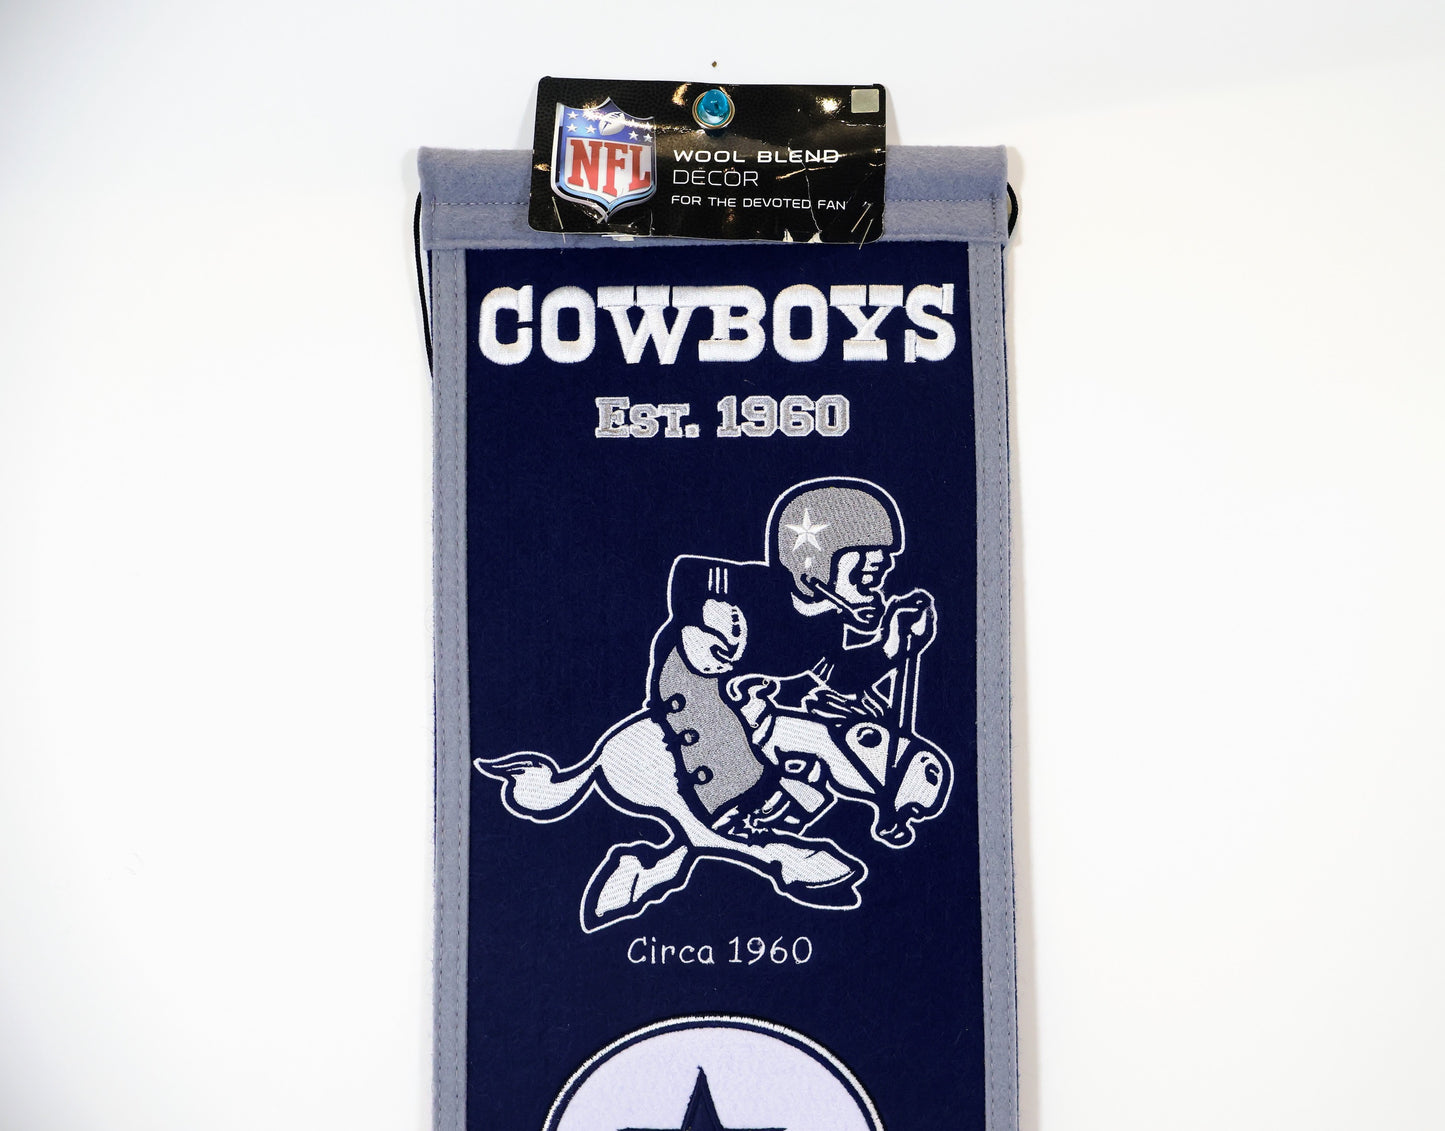 Dallas Cowboys Heritage Banner